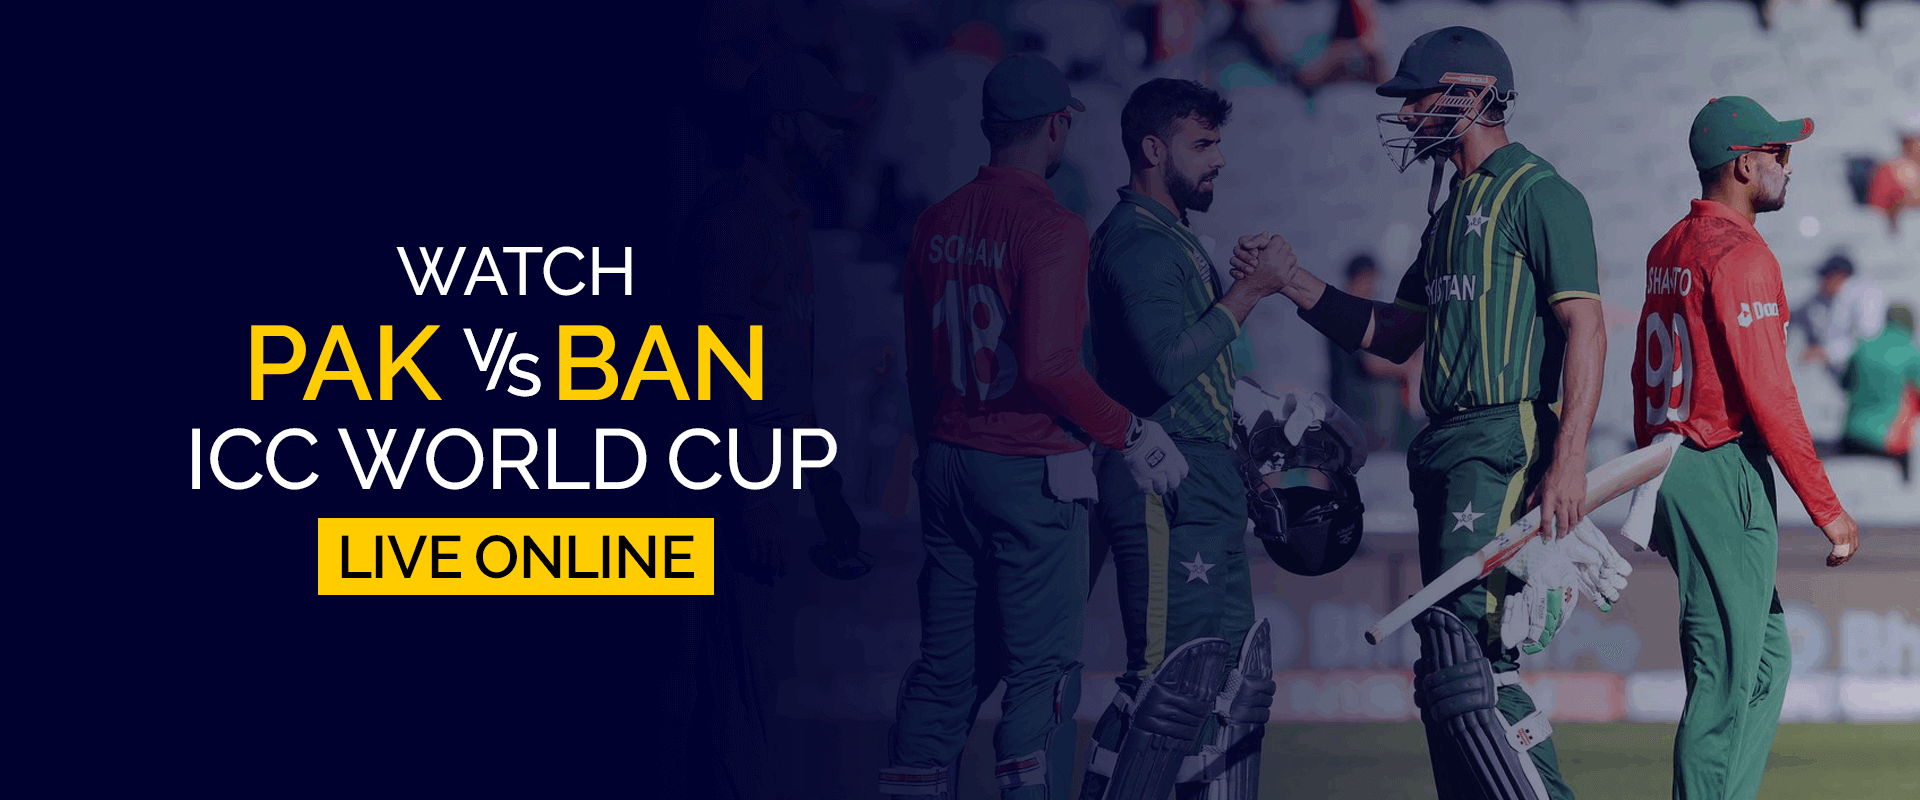 パキスタン対バングラデシュICCワールドカップをオンラインでライブ観戦する